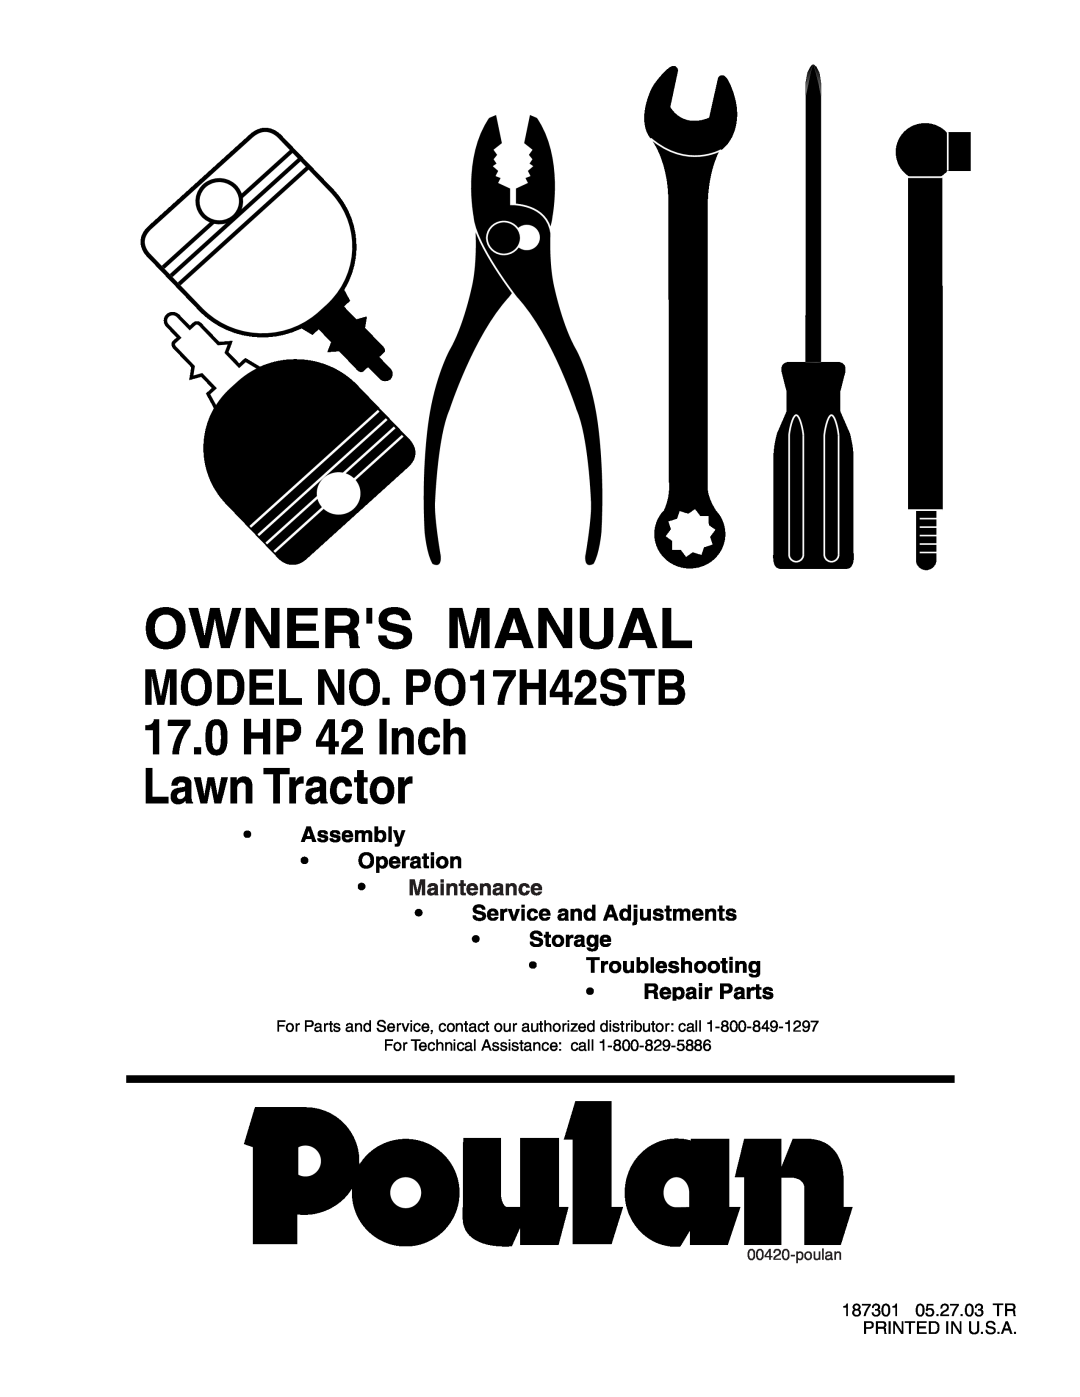 Poulan manual MODEL NO. PO17H42STB 17.0HP 42 Inch Lawn Tractor, poulan 